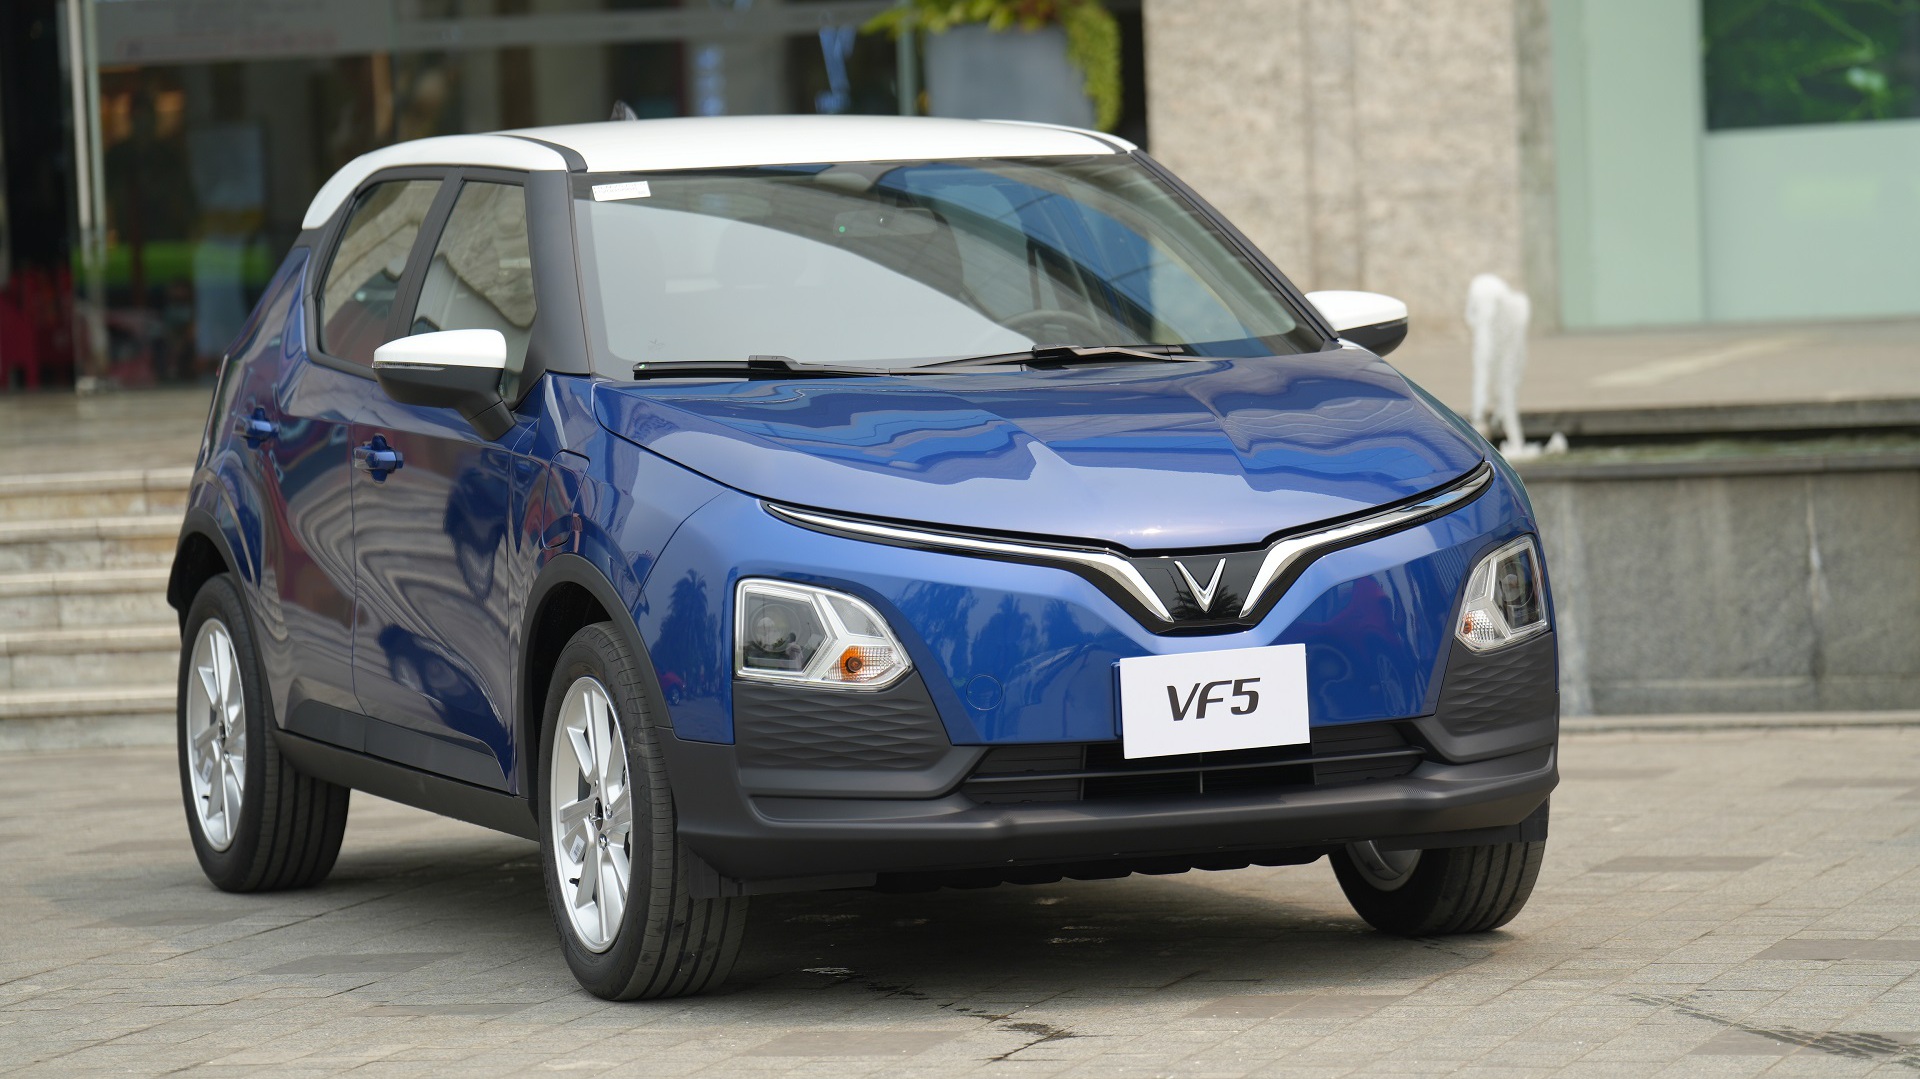 Hơn 3.000 khách hàng đặt cọc mua xe điện VF5 Plus của VinFast